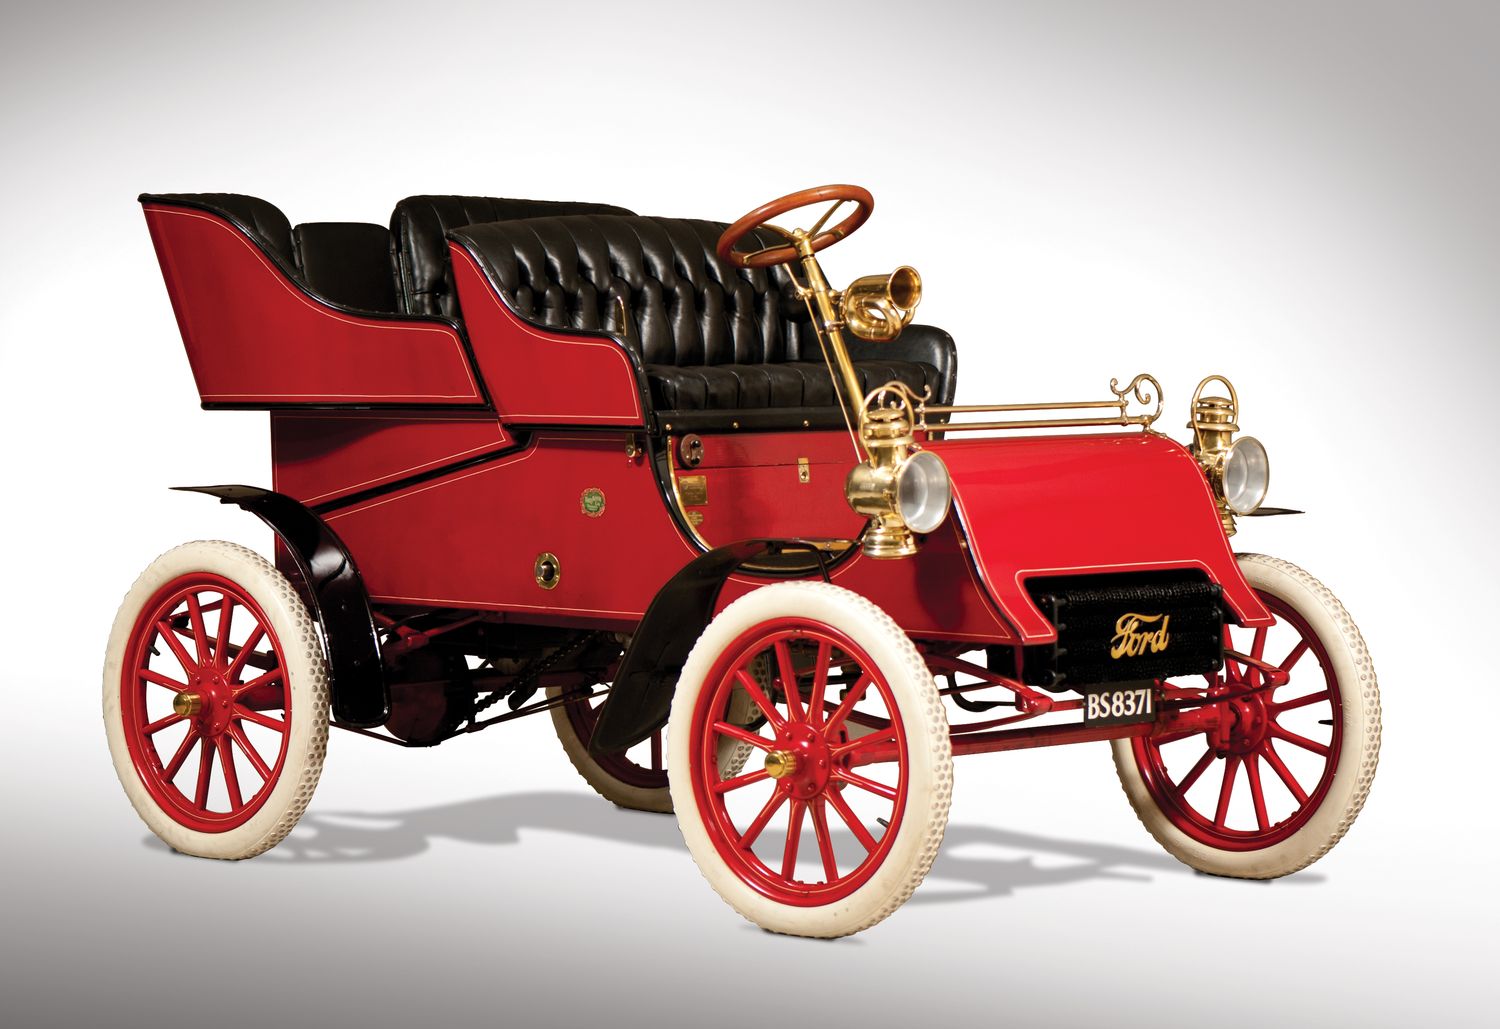 15 juillet 1903 – Henry Ford vend sa première voiture – L'annuel de l' automobile